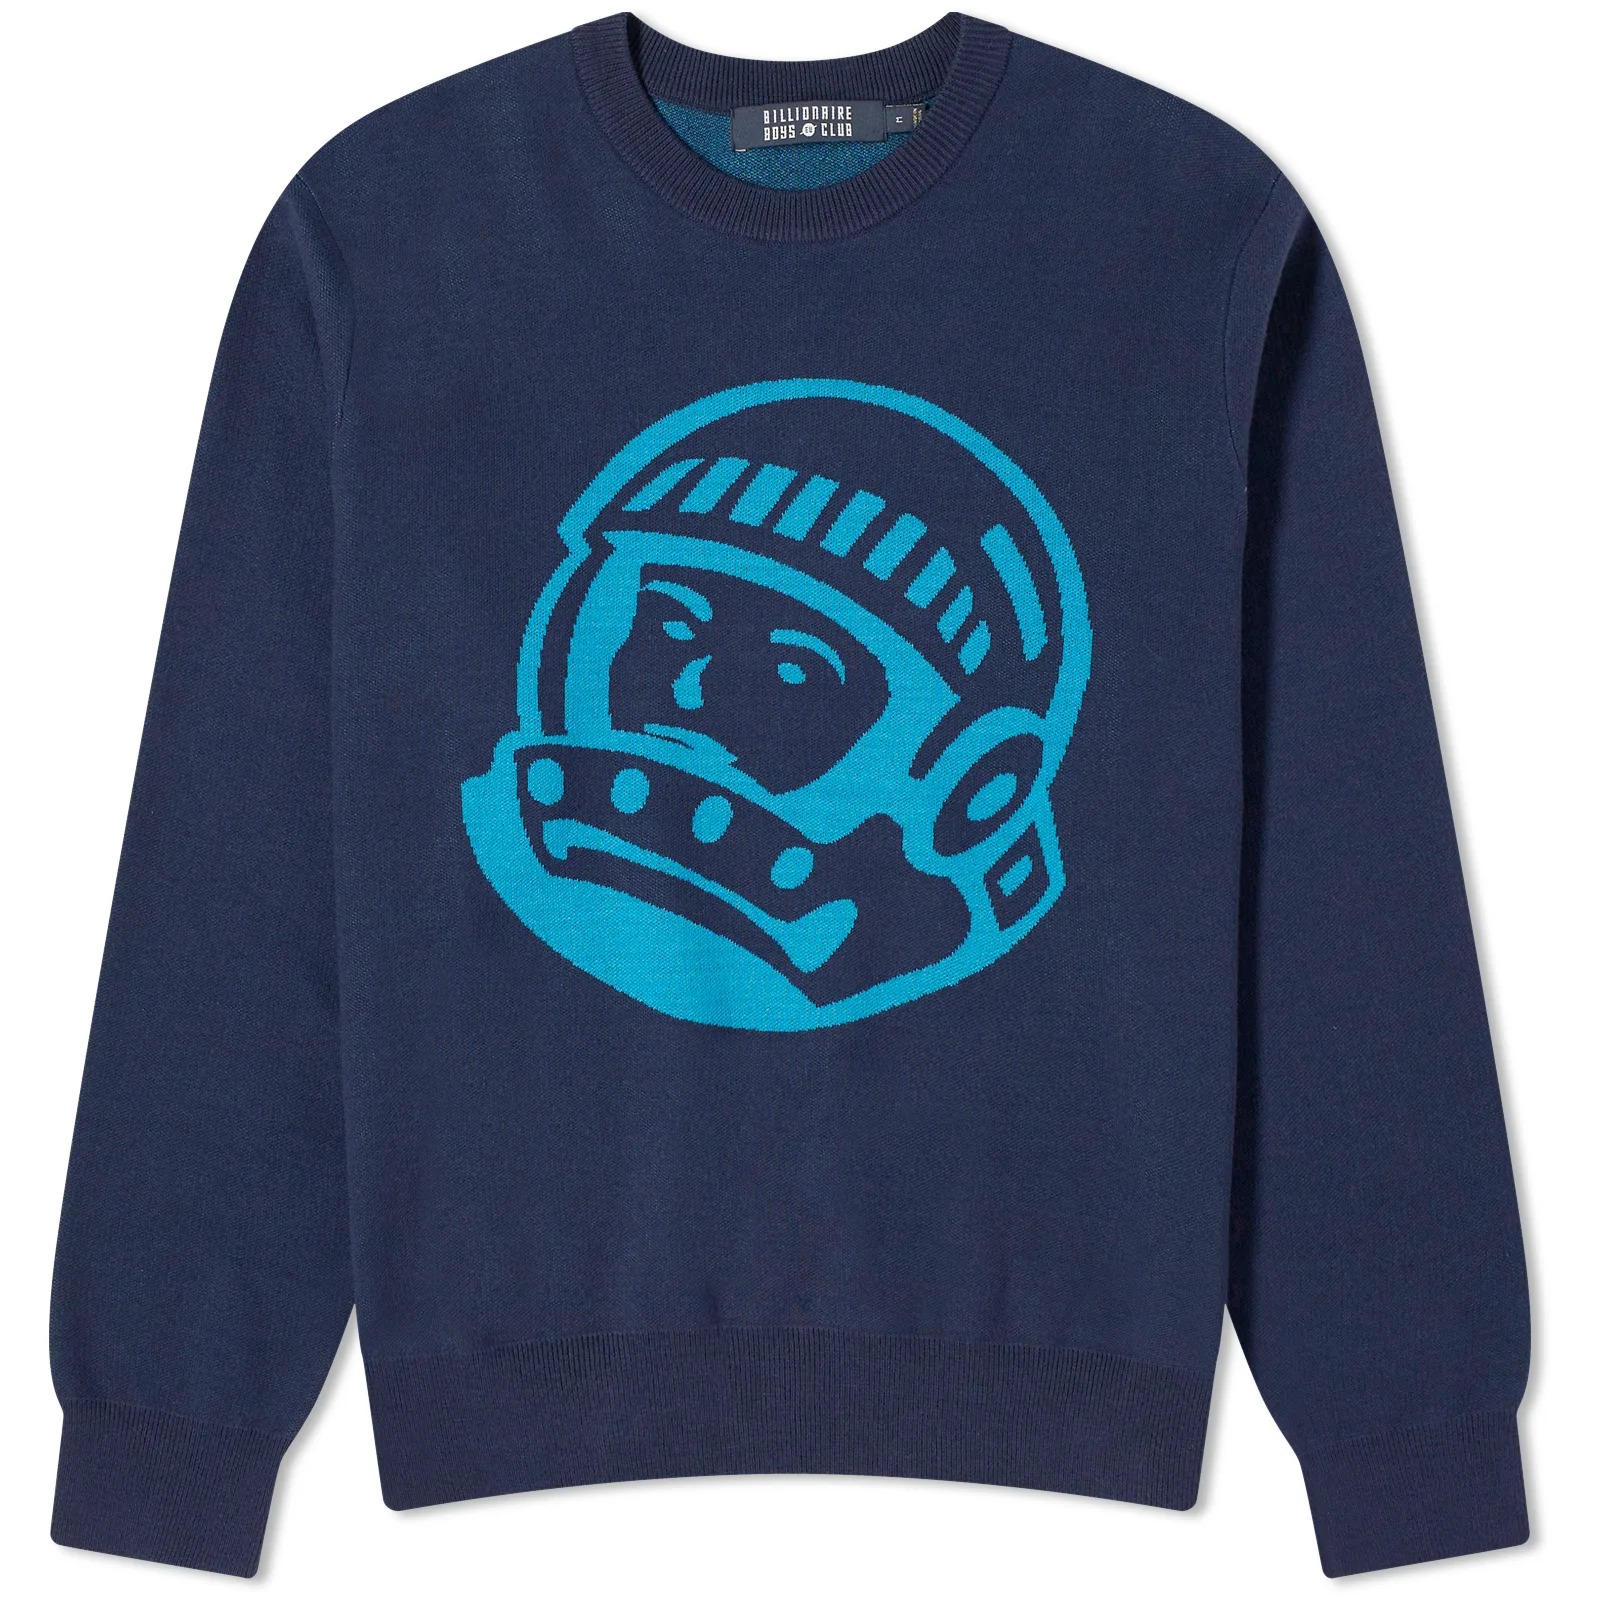 цена Свитшот Billionaire Boys Club Astro Crew Knit, синий/темно-синий